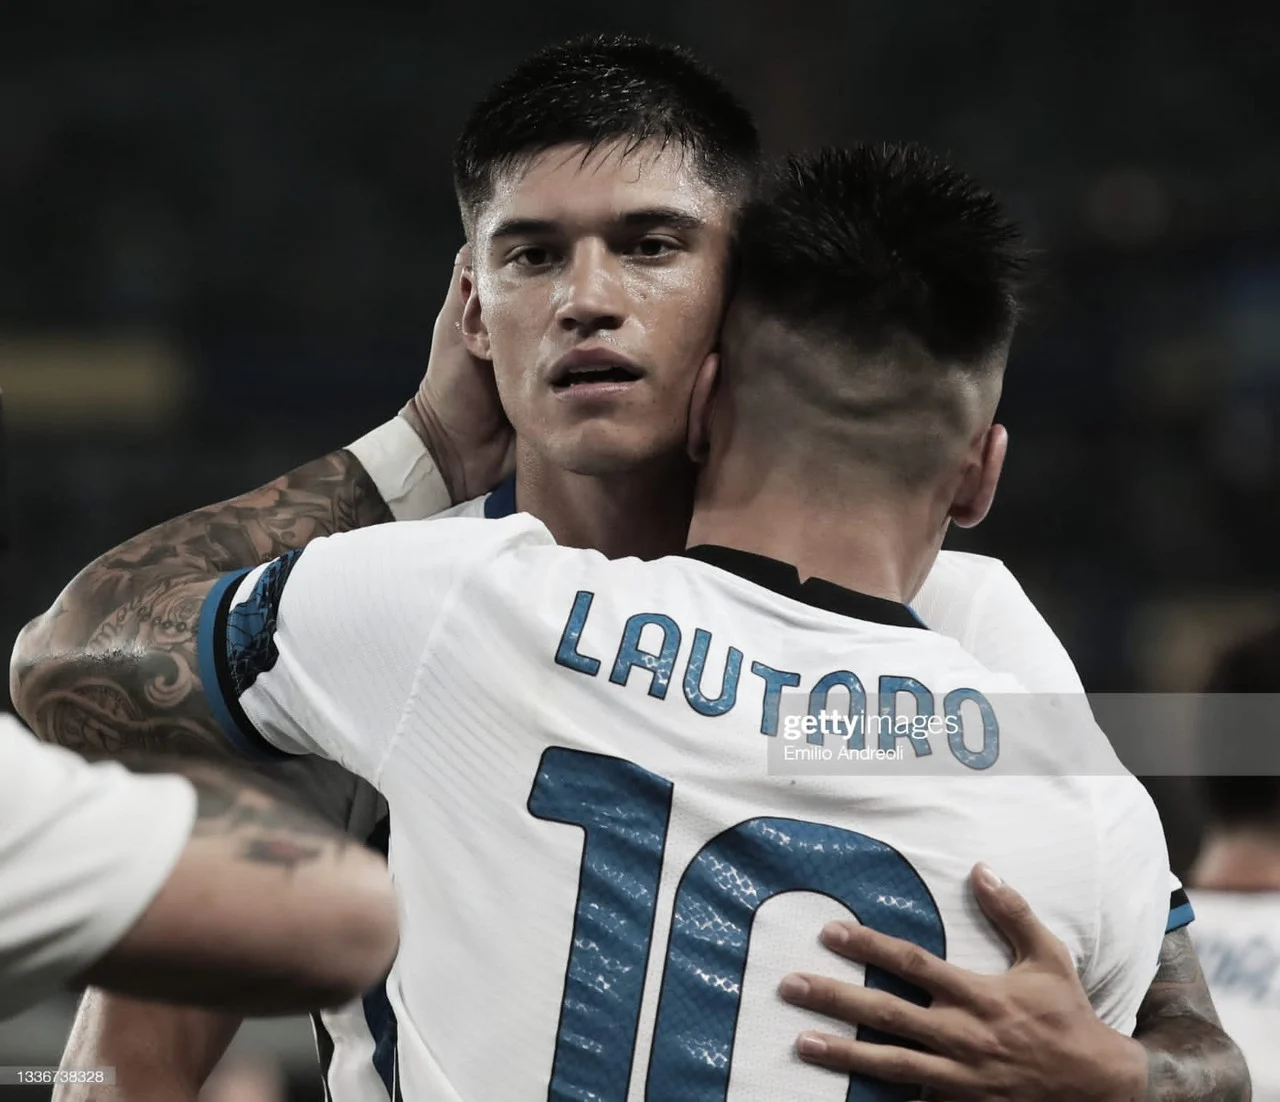 Dos goleadores argentinos sueltos en Verona